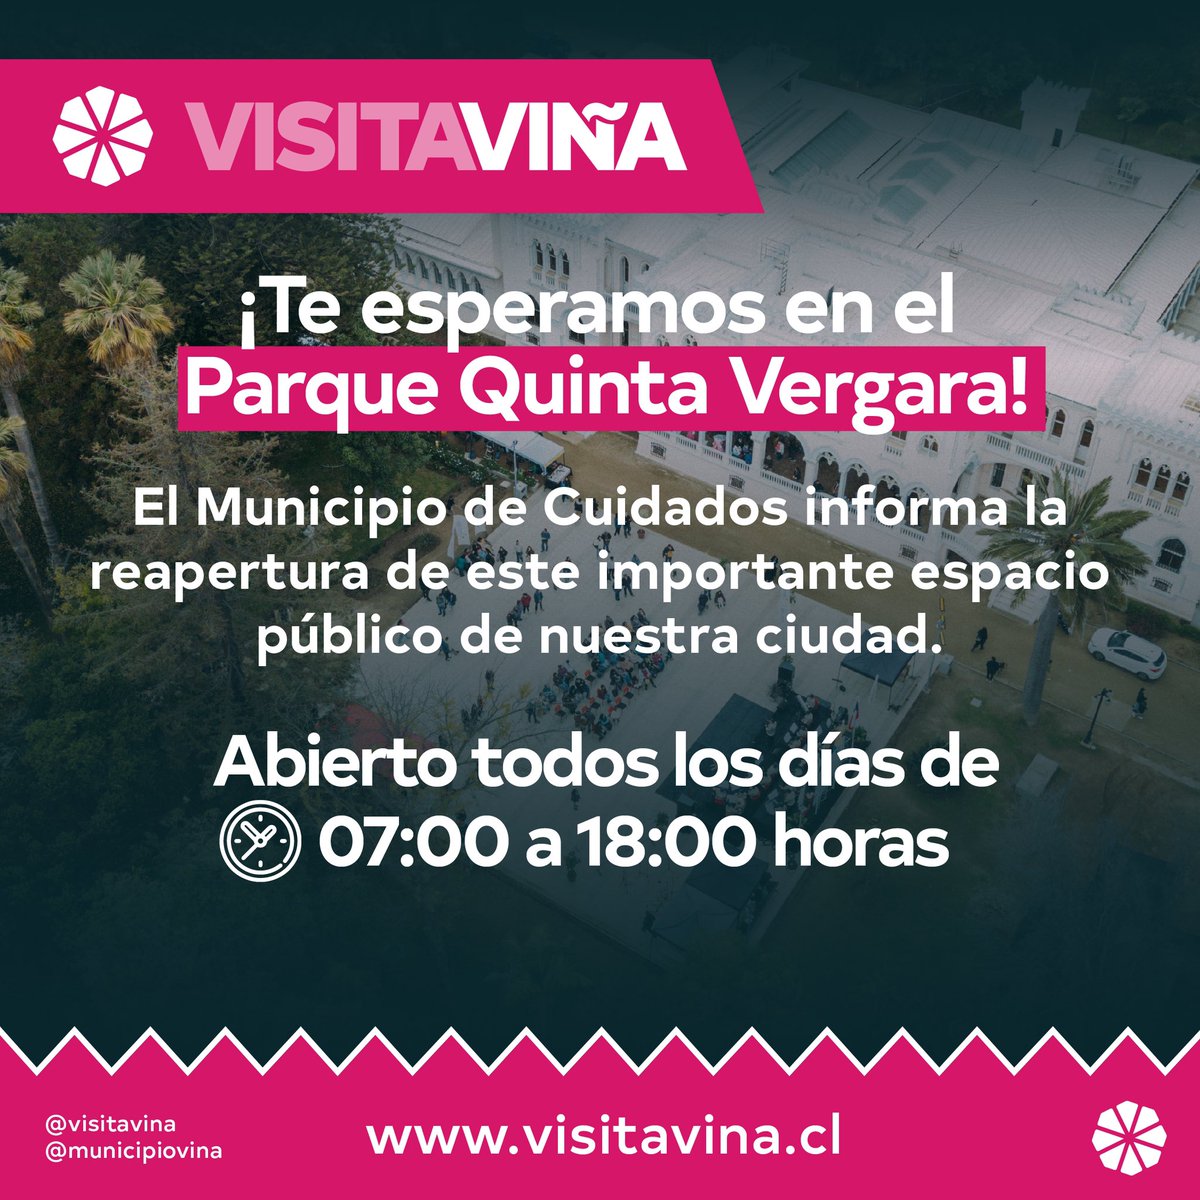 ¡El Parque Quinta Vergara y Museo Palacio Vergara reabren sus puertas! ⏰️ Horarios: 🌳 Parque Quinta Vergara: todos los días de 07:00 a 18:00 horas. 🖼 Museo Palacio Vergara: martes a domingo 10:00 a 13:30 y 15:30 a 17:30 horas. #ViñadelMar